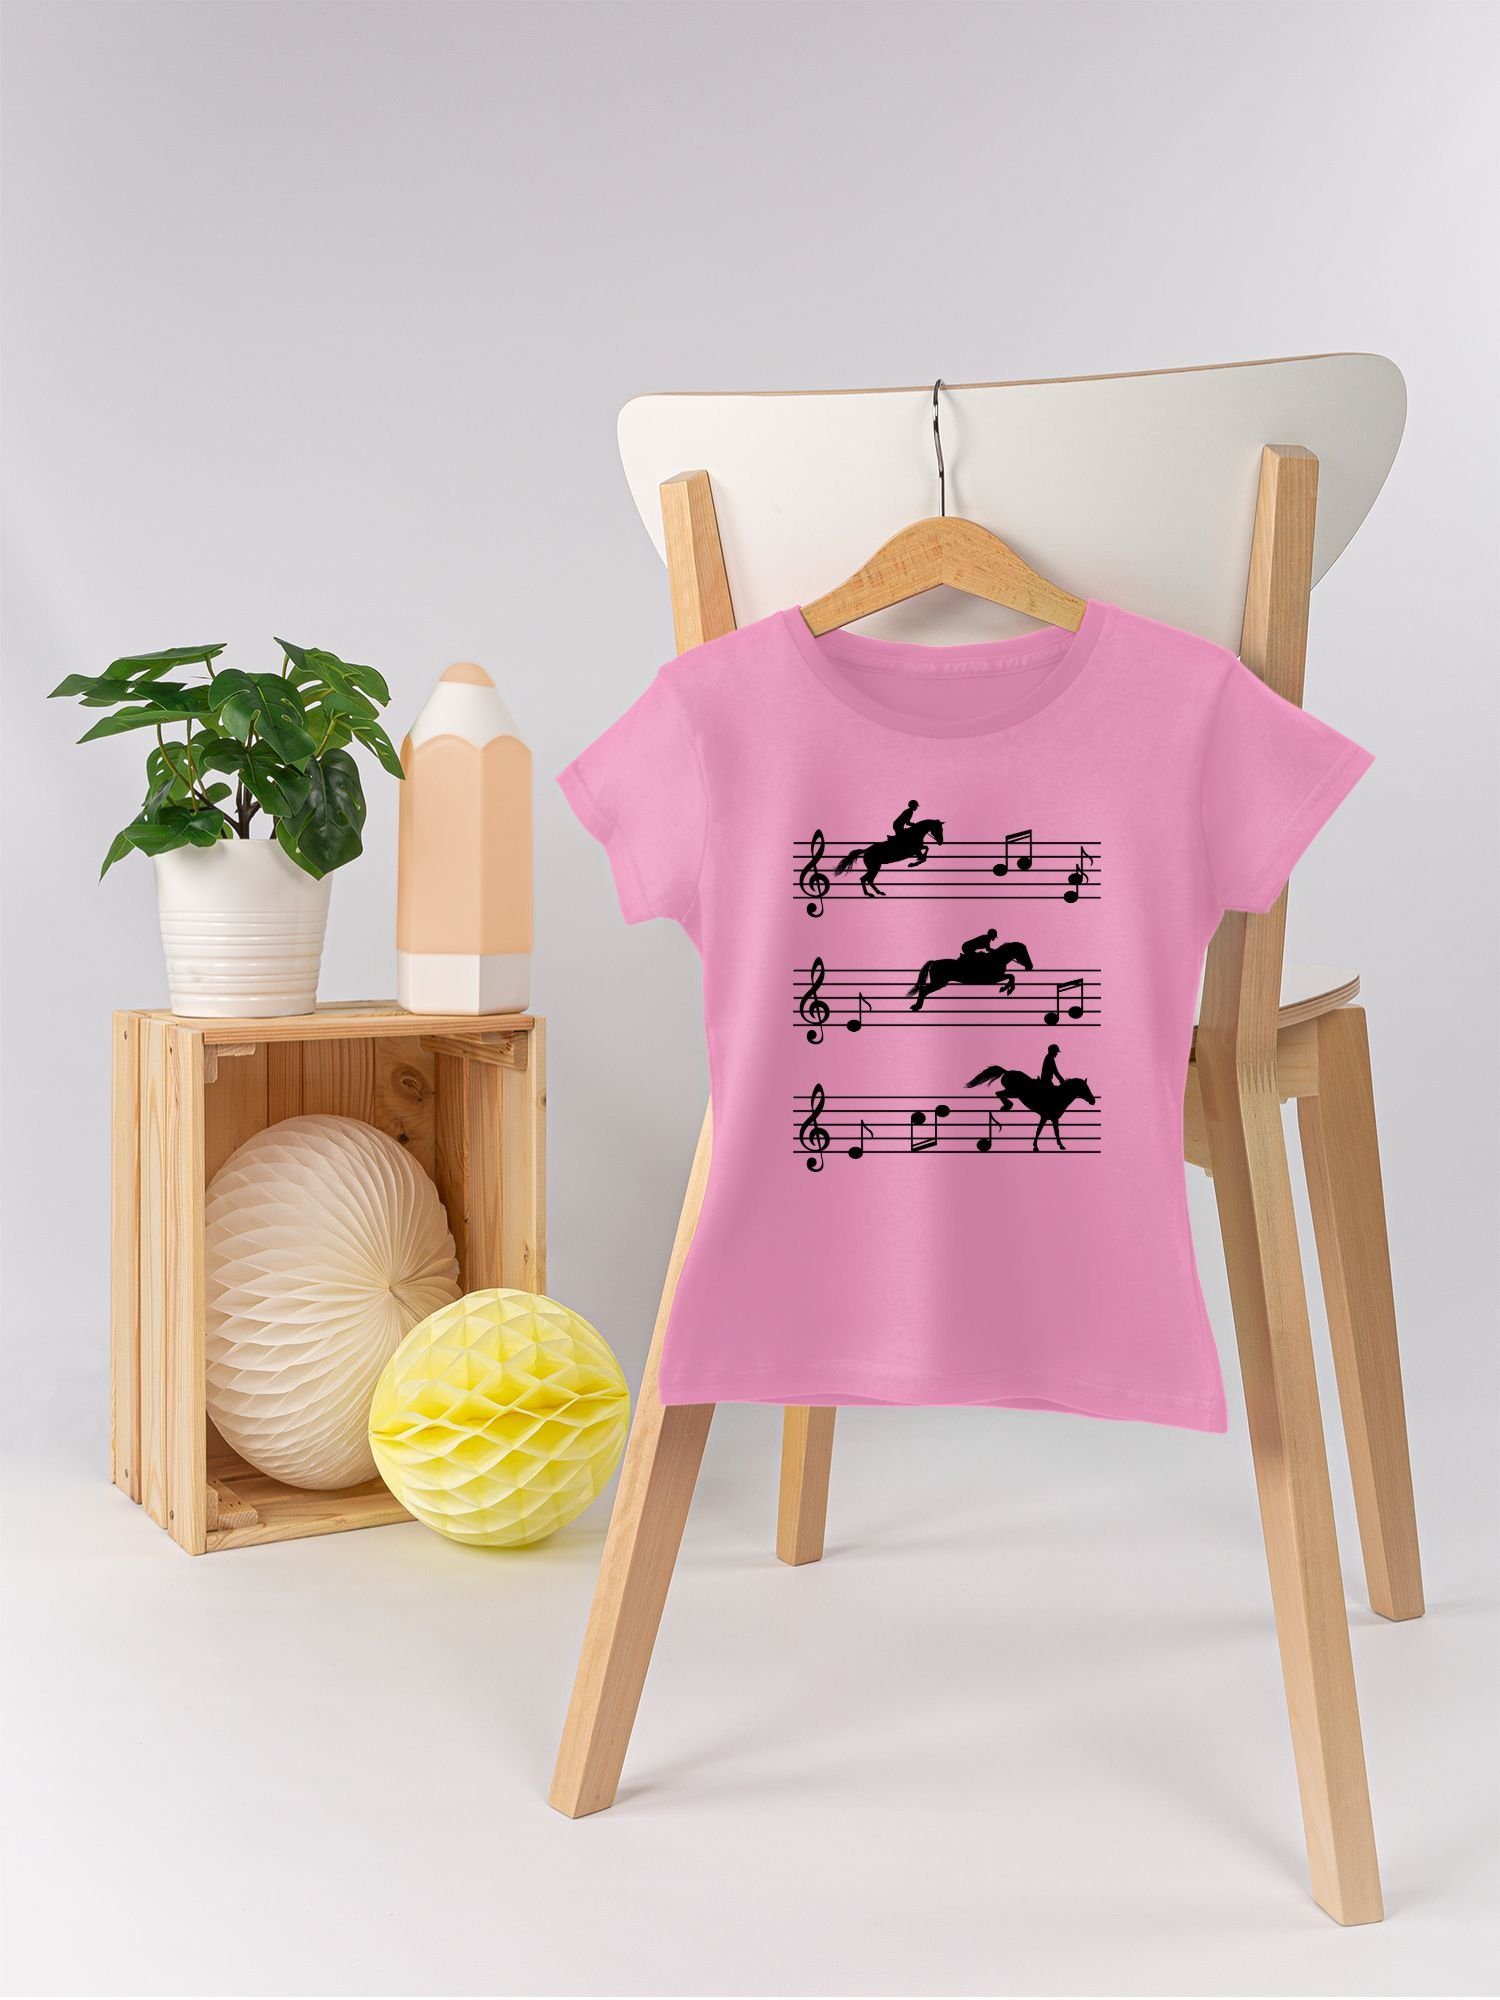 Shirtracer T-Shirt Pferde auf Musiknoten Rosa 2 Pferd - schwarz